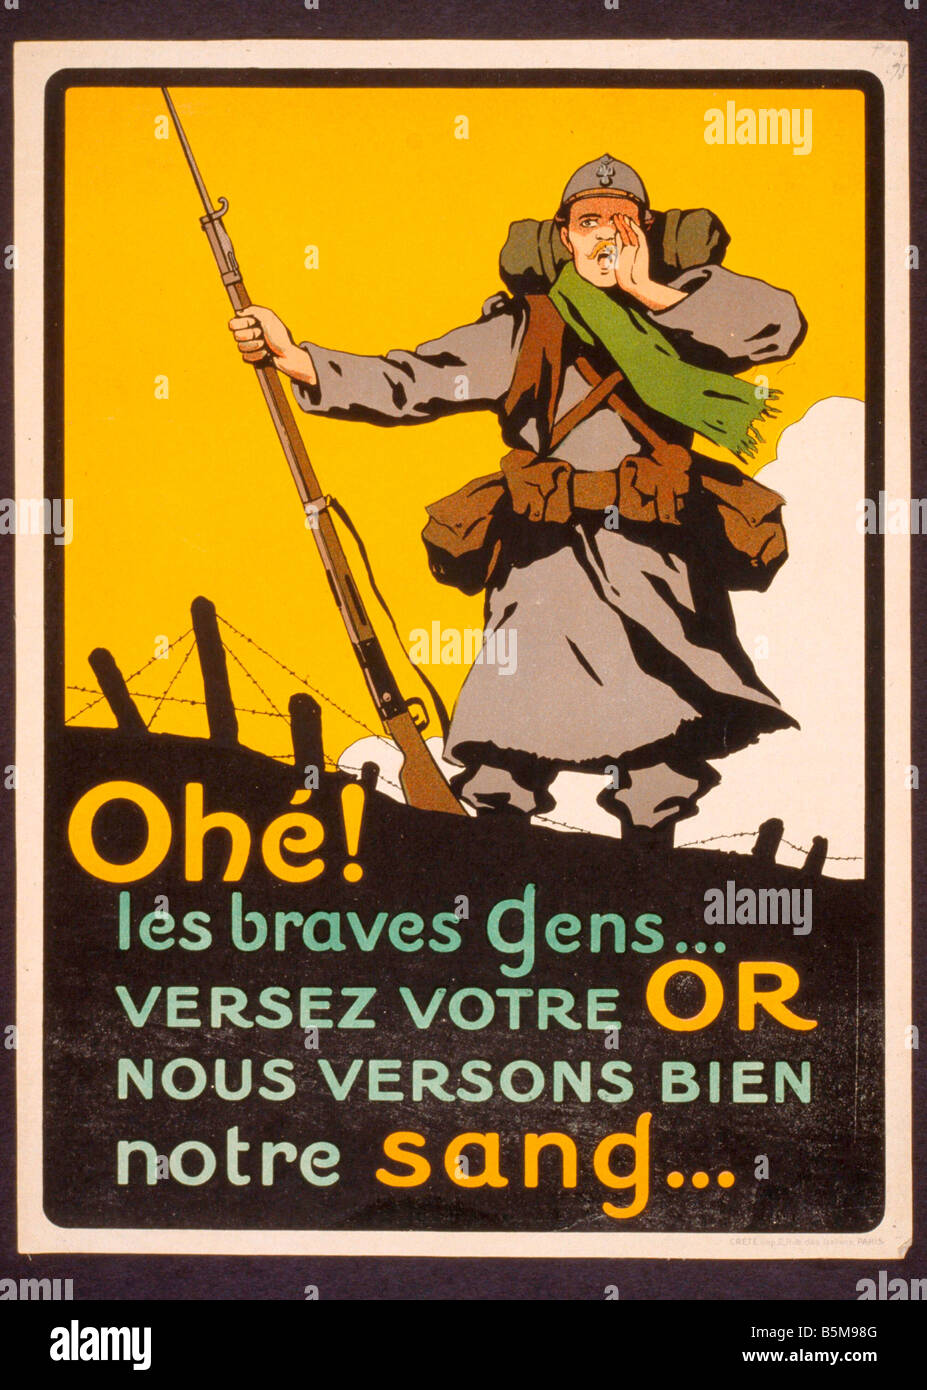 2 G55 P1 1914 96 WW Invito a donare oro Poster francese Storia La Prima Guerra Mondiale la propaganda ohe Les braves gens Versez votre o nous Foto Stock